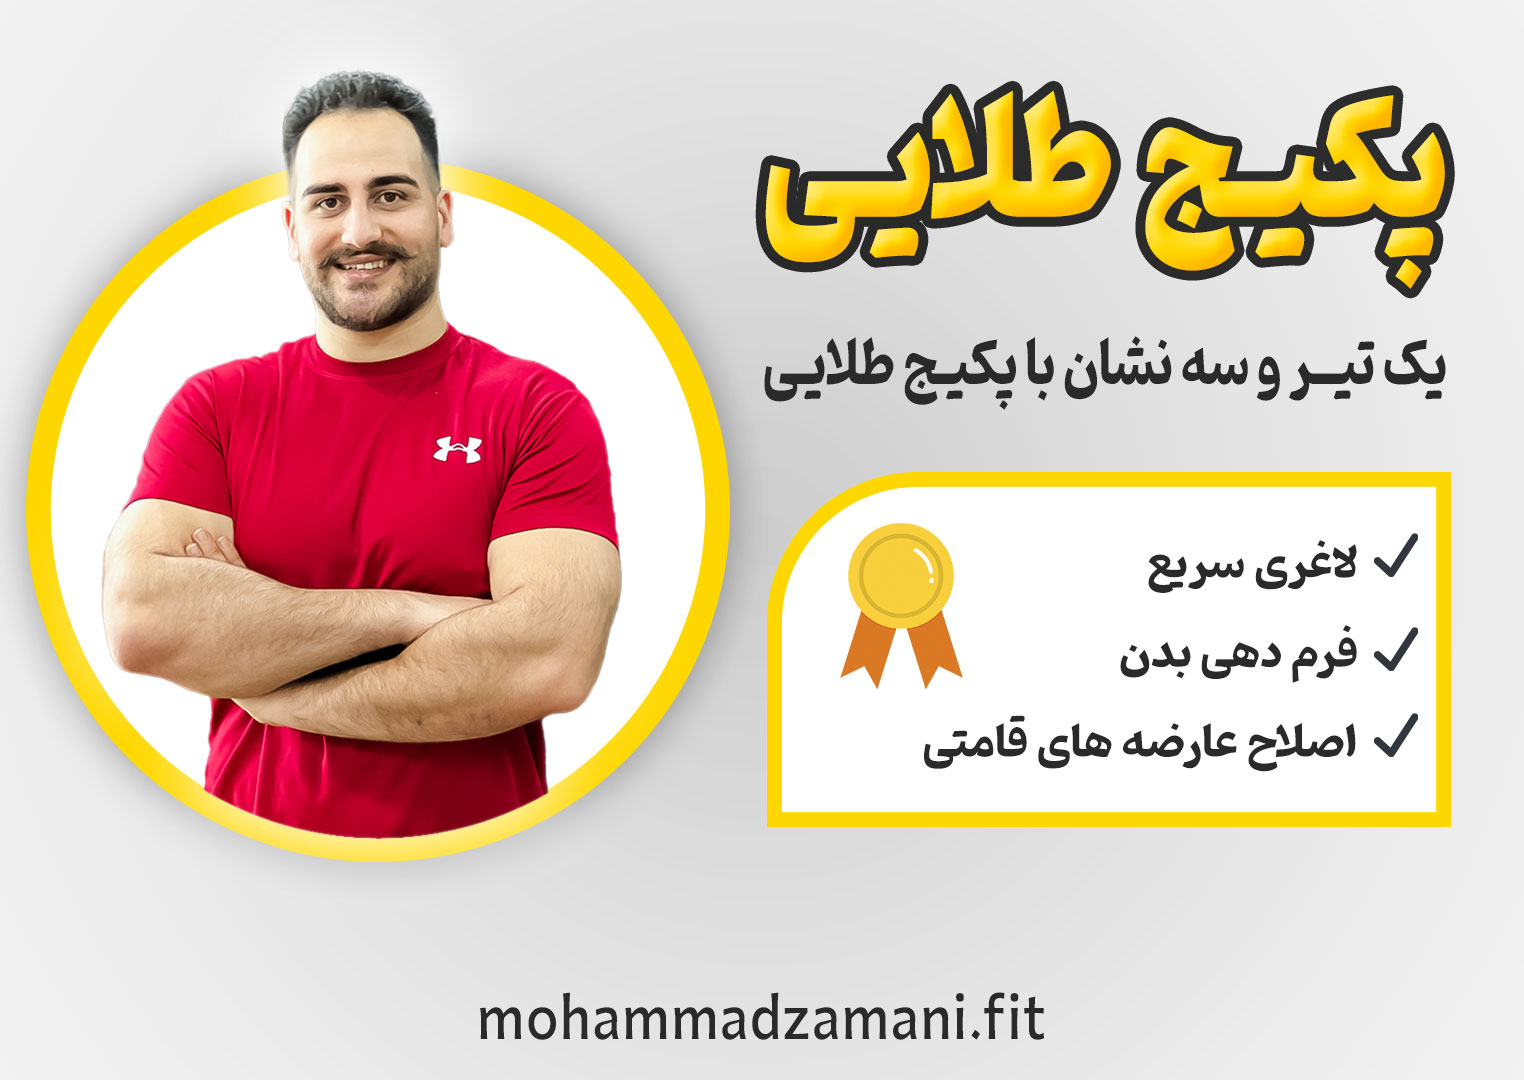 پکیج طلایی محمد زمانی فیت متشکل از سه برنامه تمرینی، اصلاحی و غذایی است که به افراد زیادی برای رسیدن به تناسب اندام کمک کرده است. 